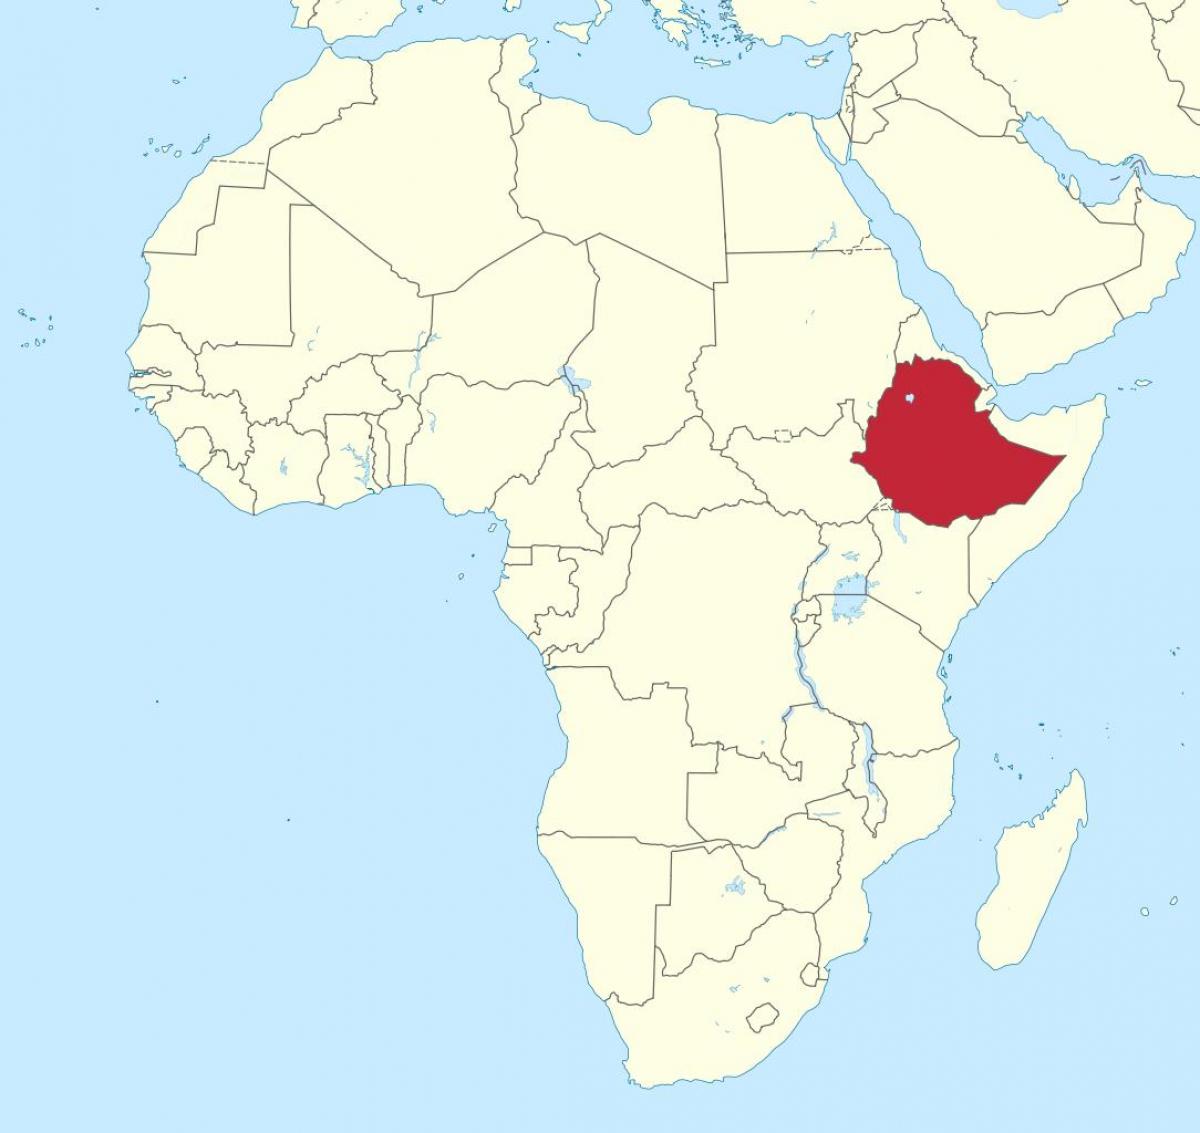 zemljevid afrike prikazuje Etiopiji